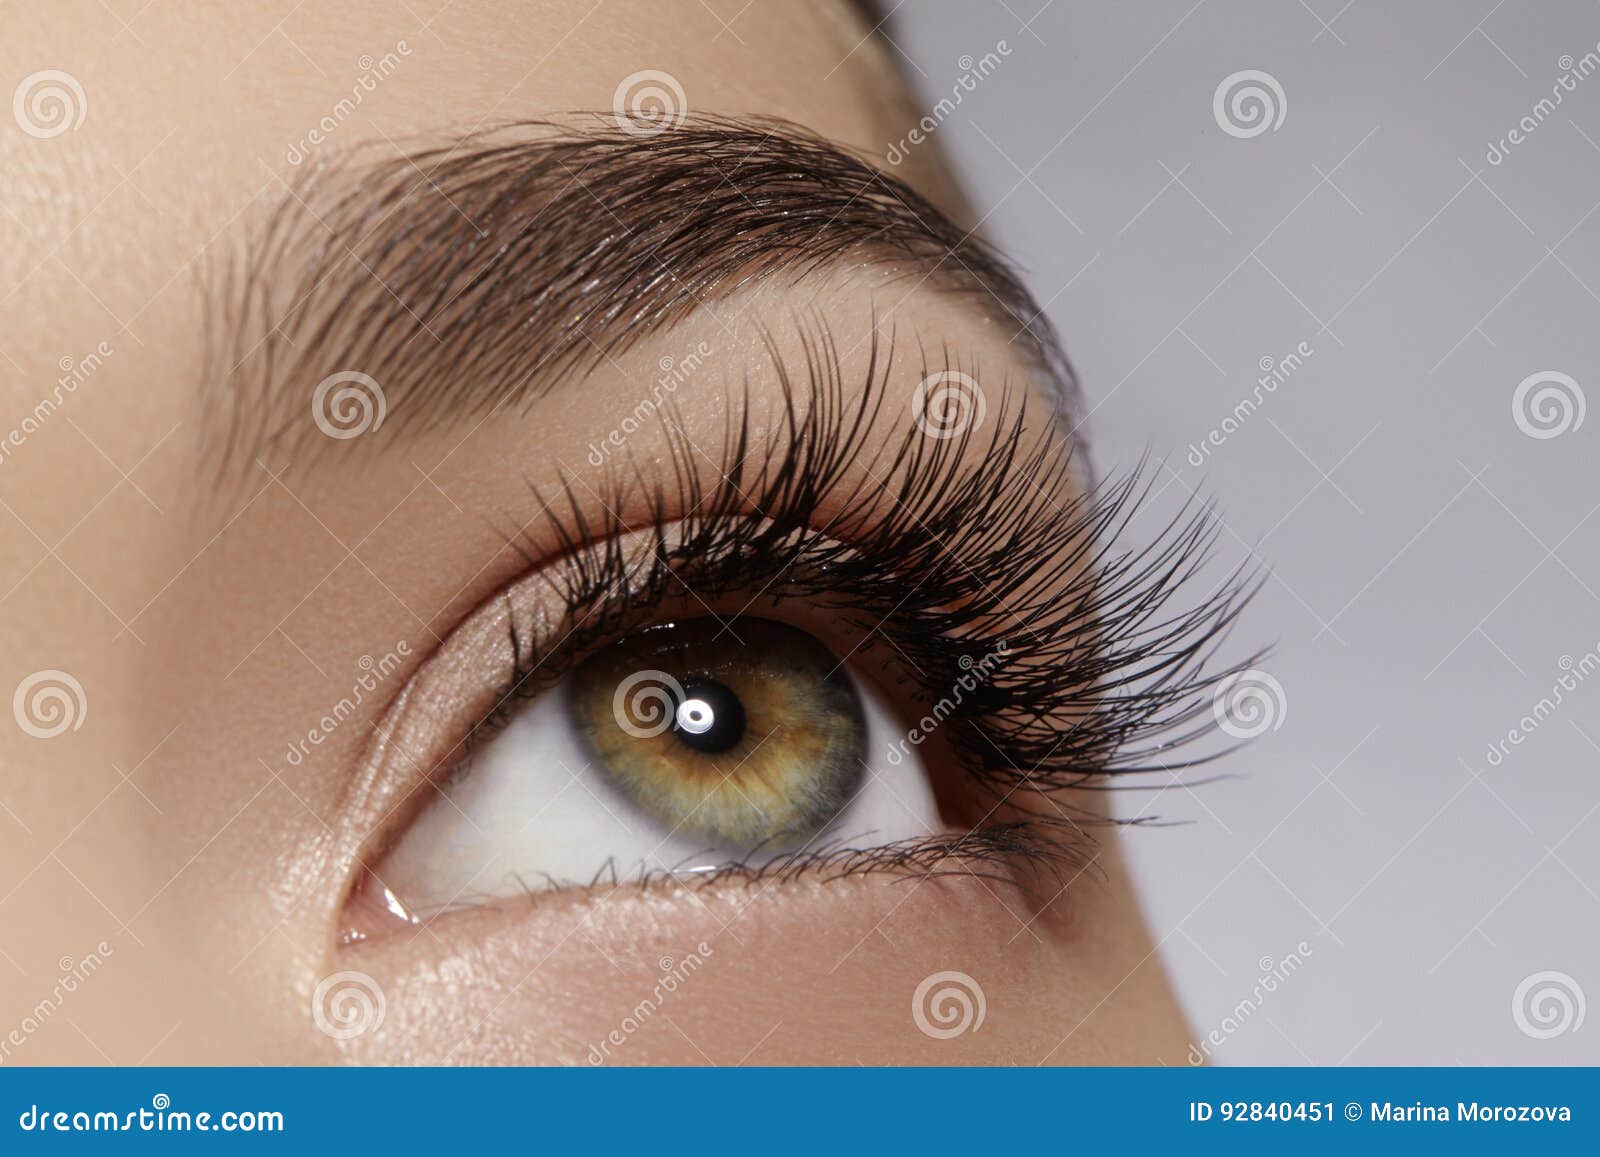 beautiful female eye with extreme long eyelashes, black liner makeup. perfect make-up, long lashes. closeup fashion eyes